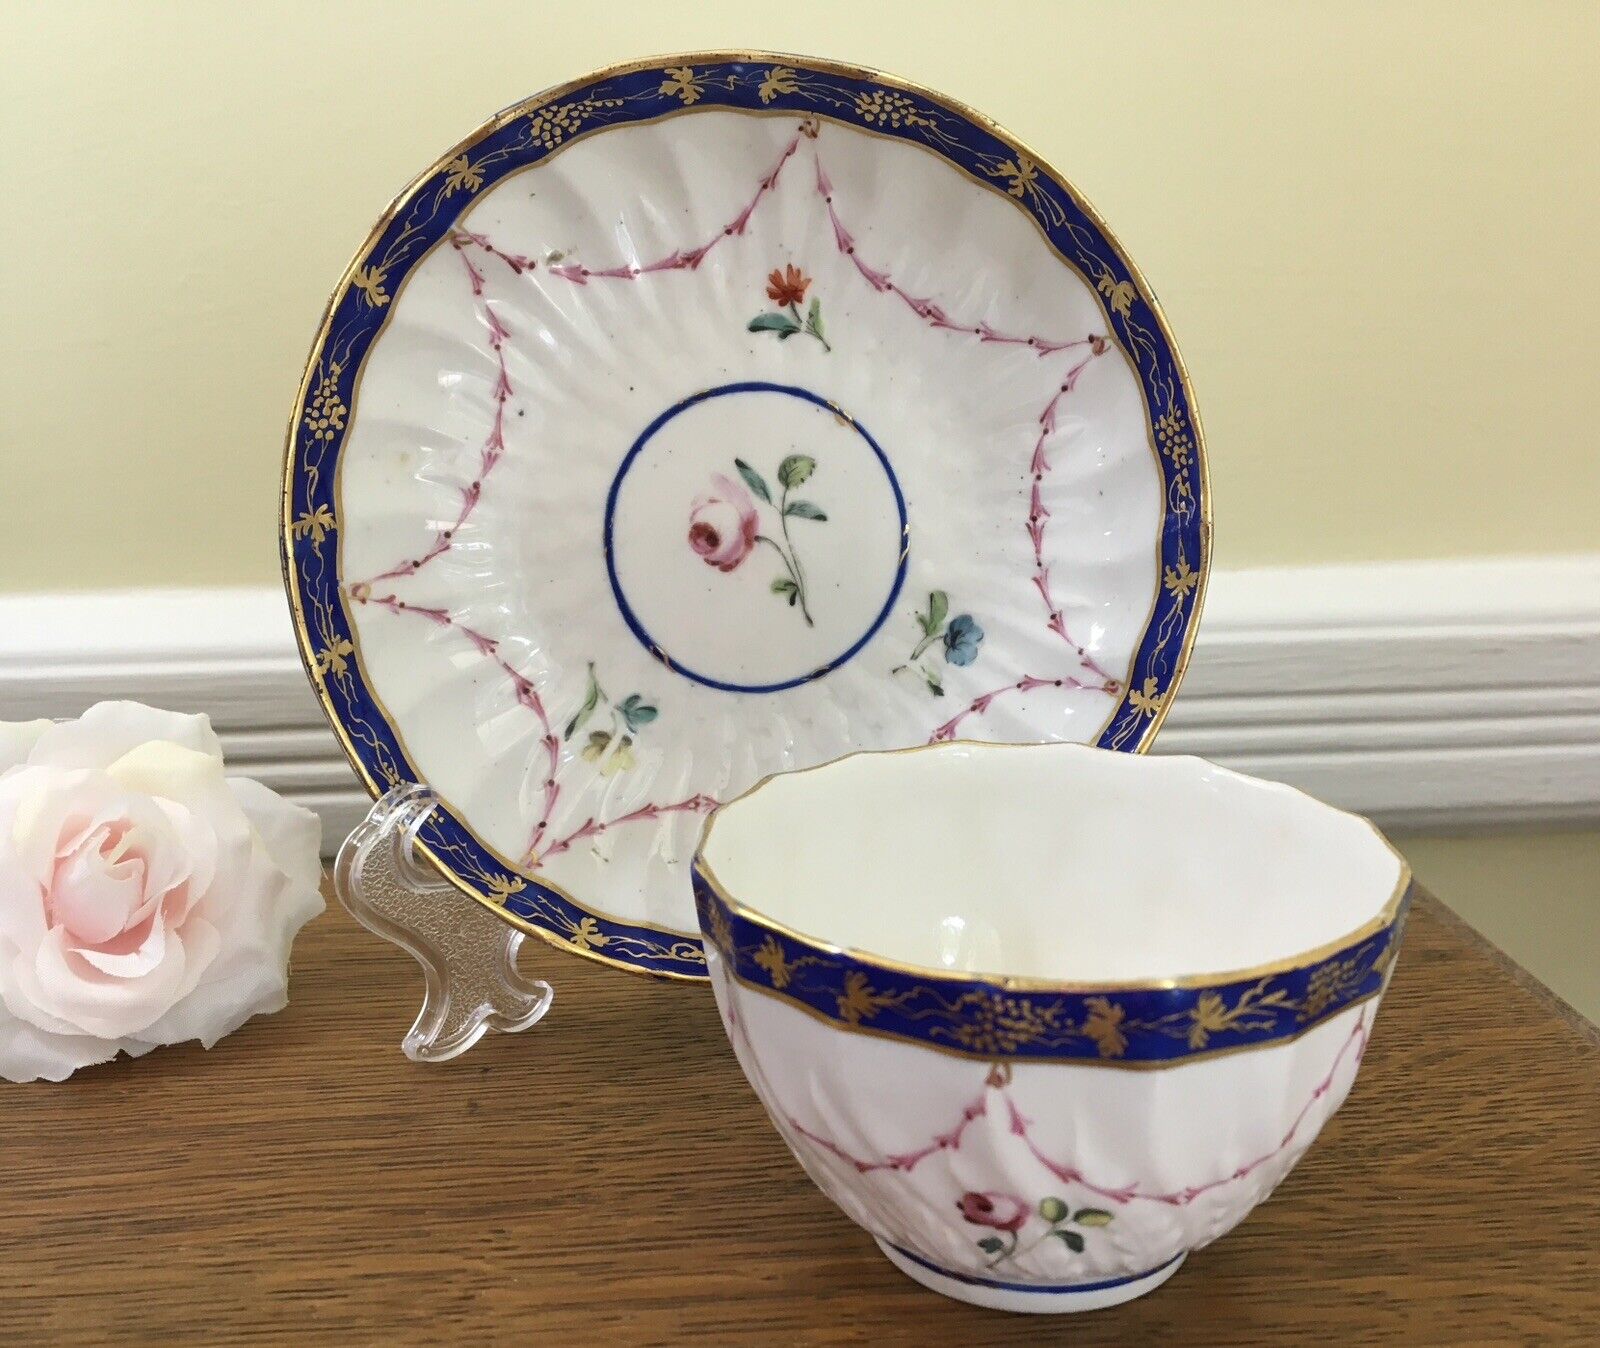 Antique c.1778 Crown Derby Tea Bowl & Saucer Handpainted Floral with Cobalt Trim